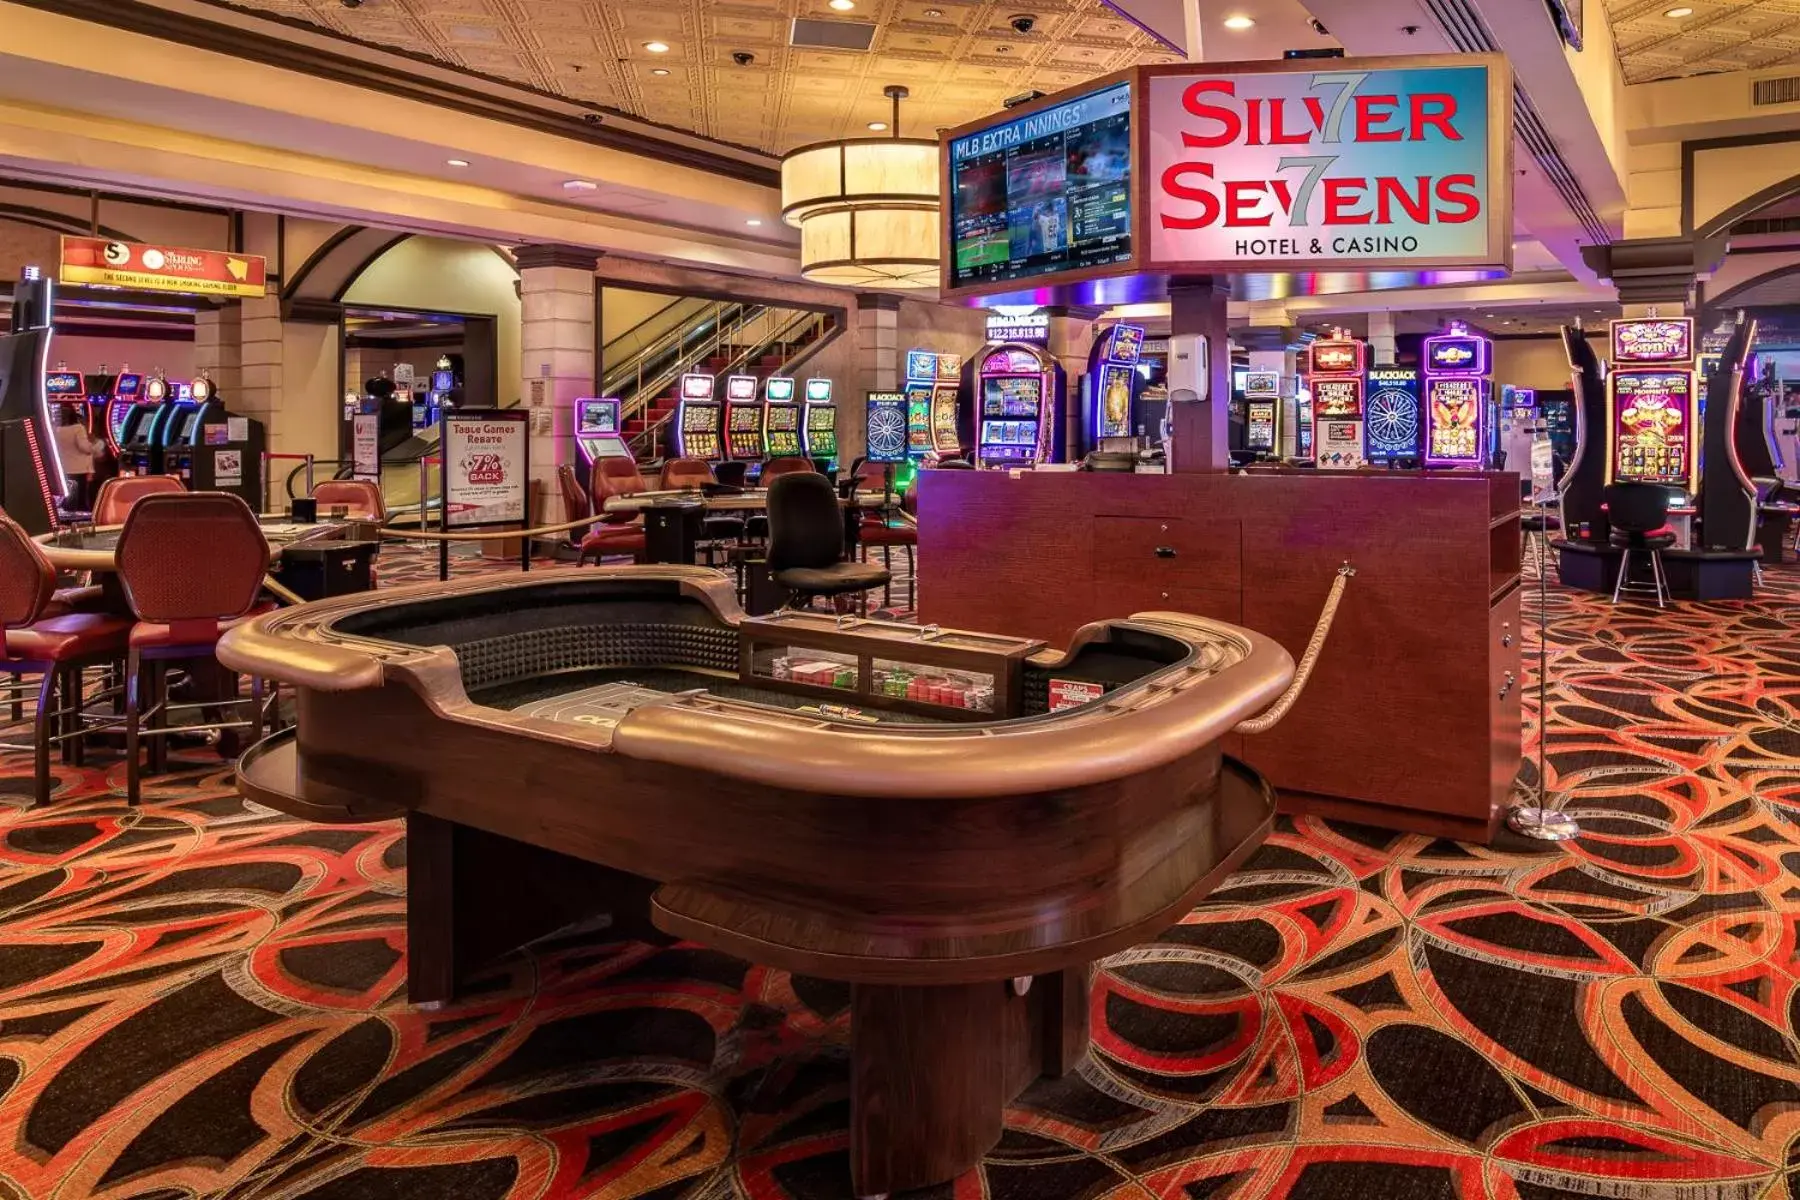 Casino in Silver Sevens Hotel & Casino